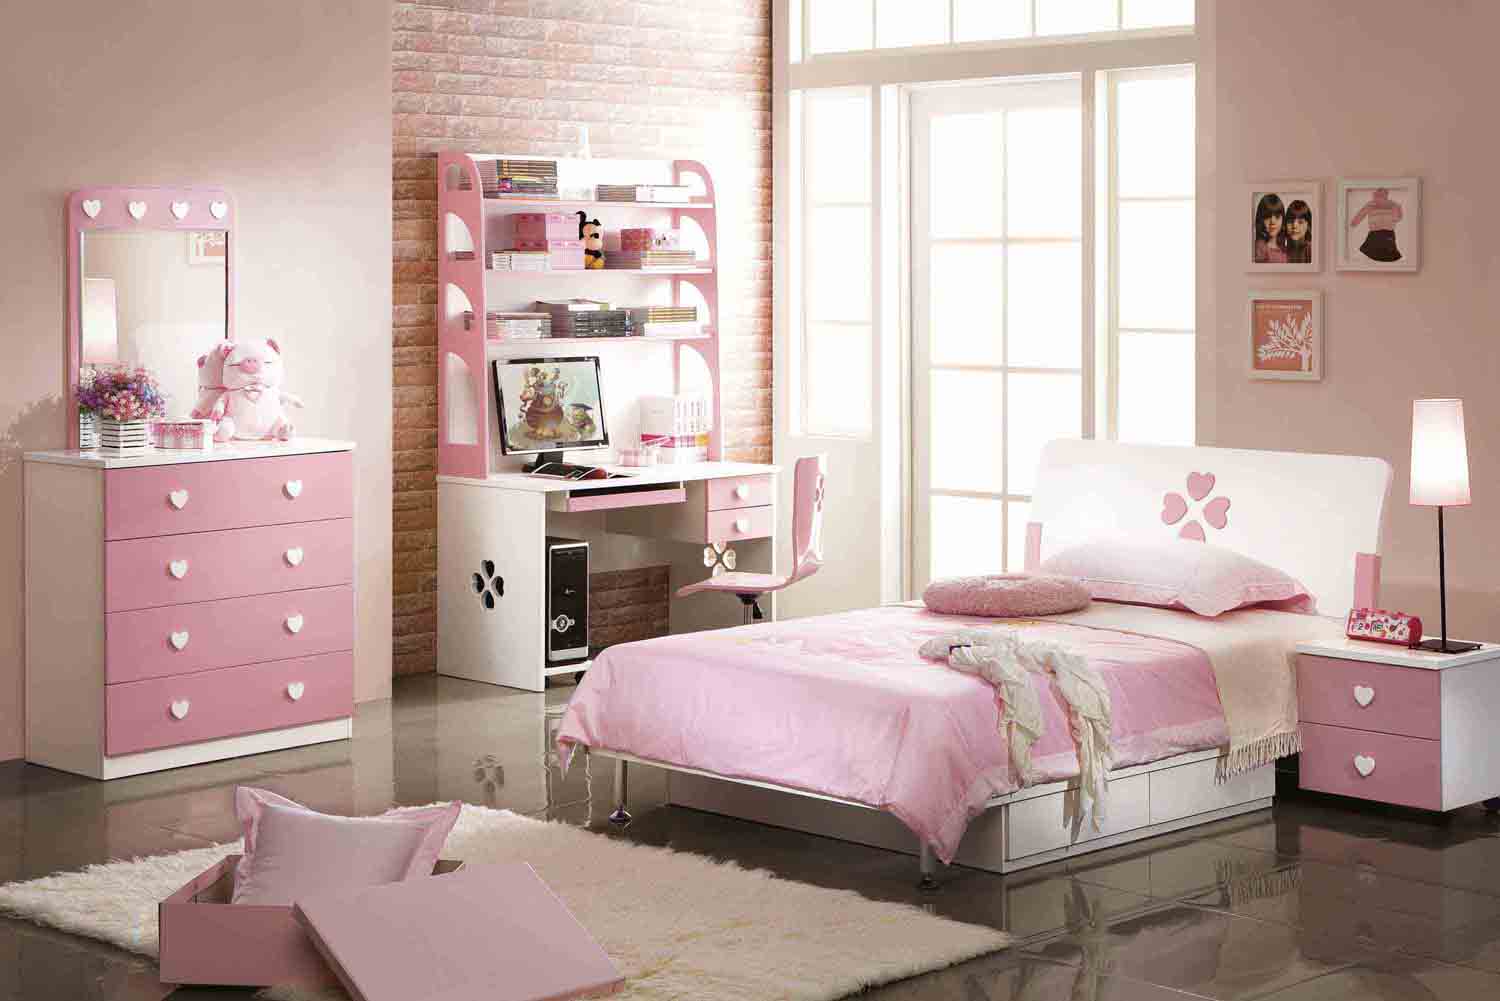 ピンクの寝室の壁紙,寝室,家具,ベッド,ルーム,ピンク